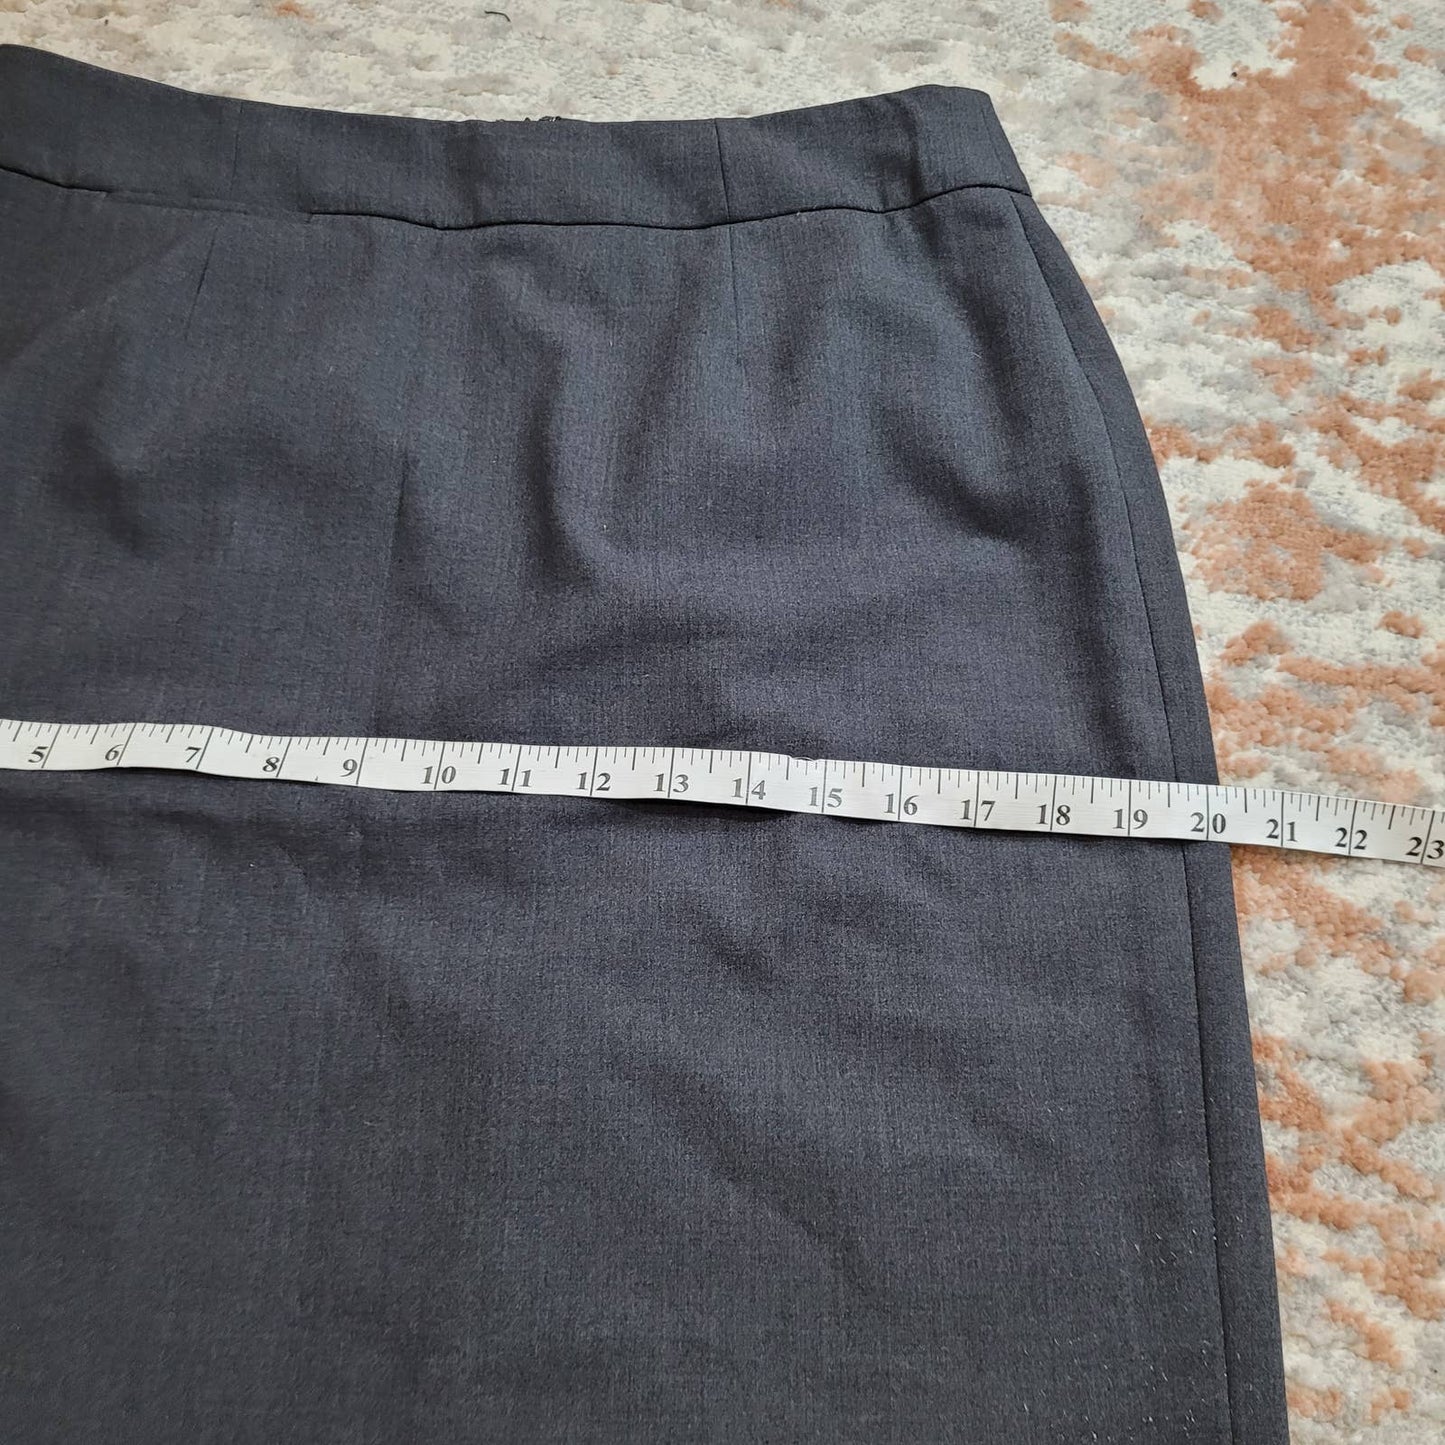 Calvin Klein Gray Pencil Skirt - Size 8